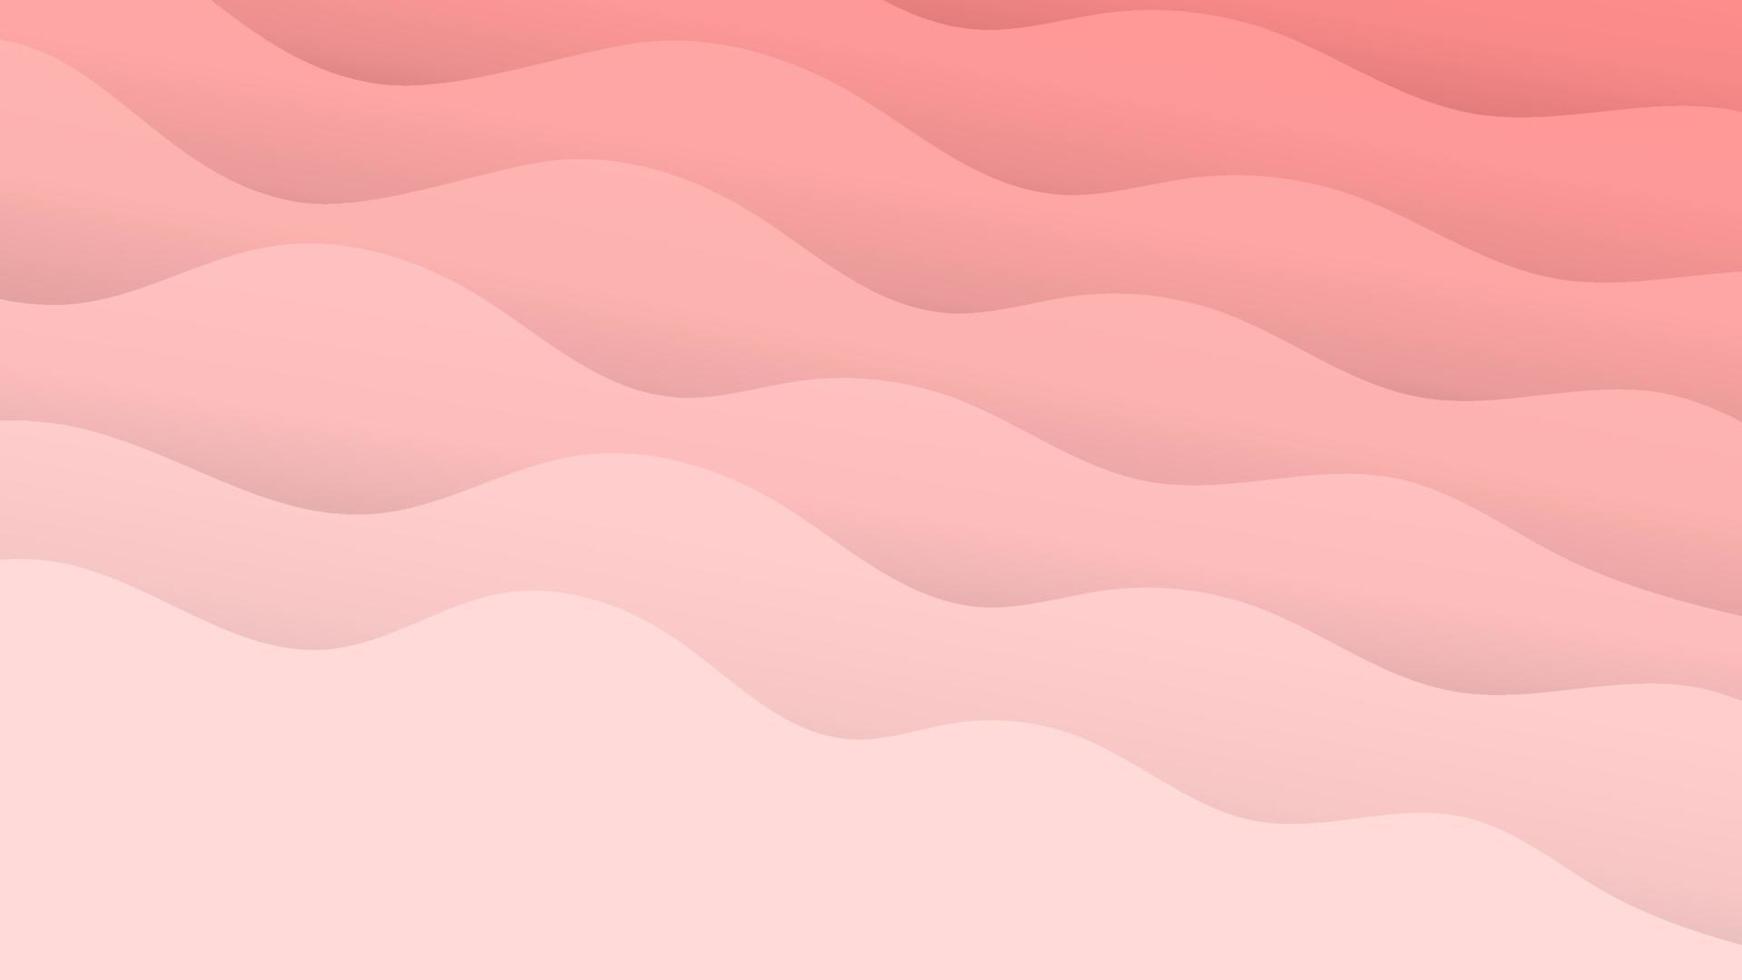 Vektorgrafik rosa Wellenmuster, sanfte Pastellwellen mit Farbverlauf, abstrakter rosa Muschelstil vektor